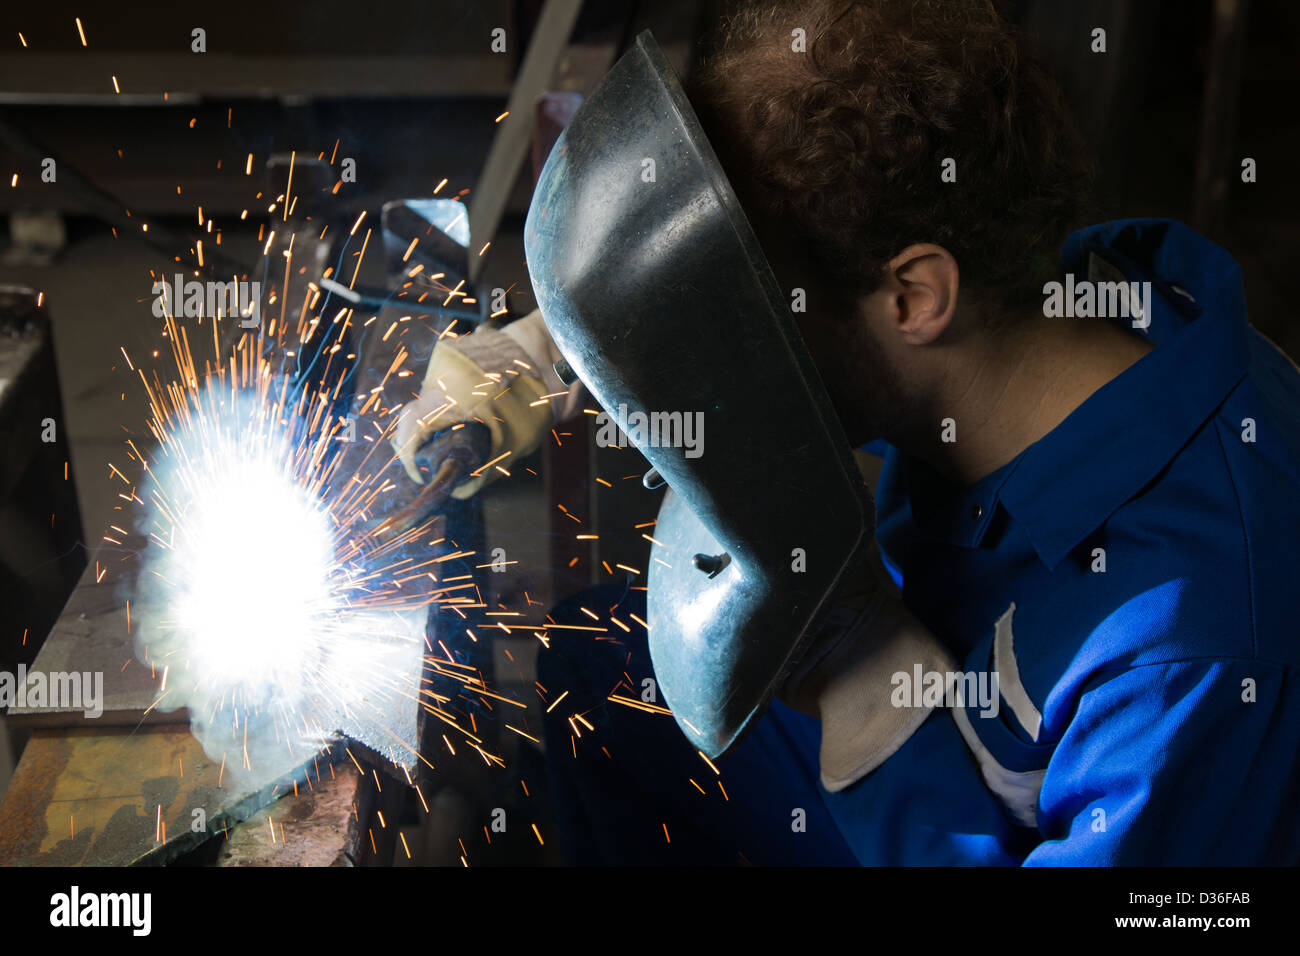 Man with welding helmet welding steel Stock Photo